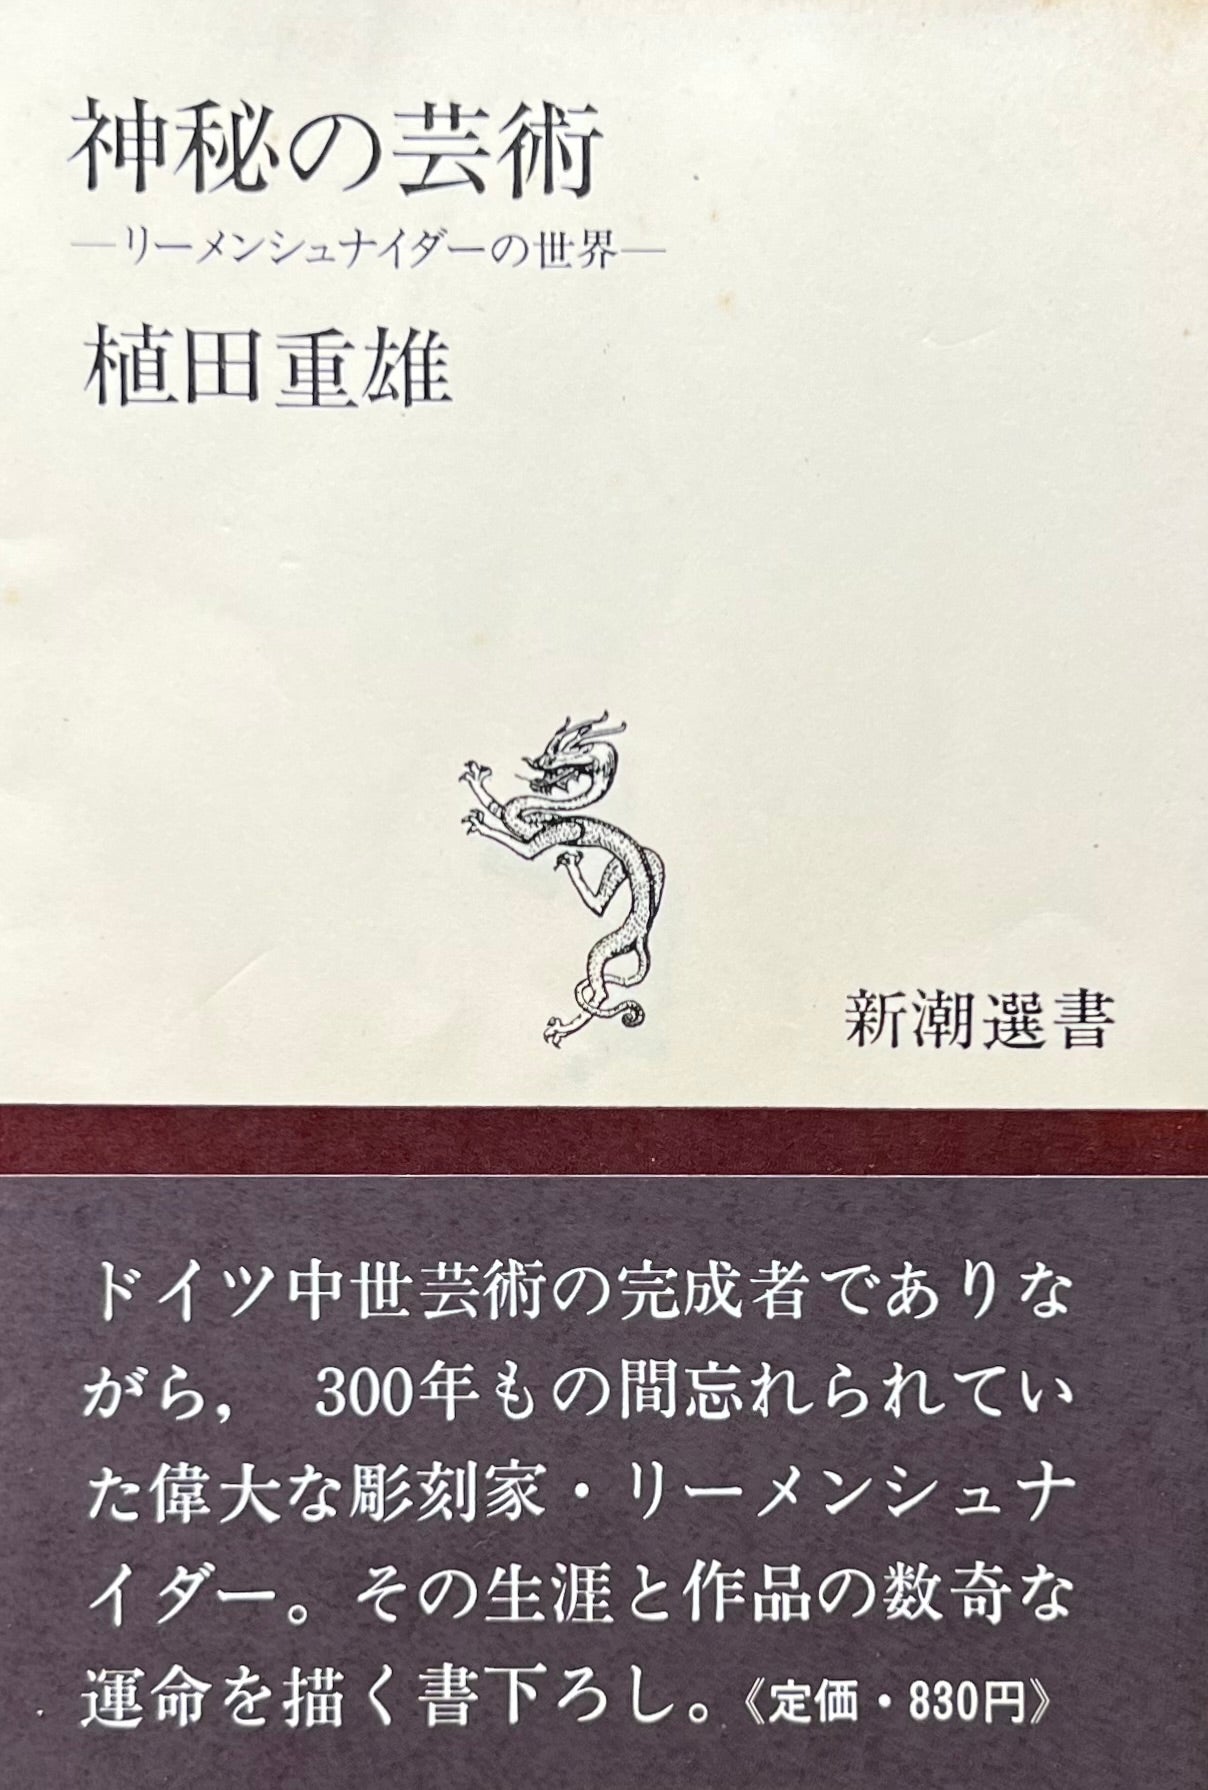 神秘の芸術 リーメンシュナイダーの世界 植田重雄 – smokebooks shop